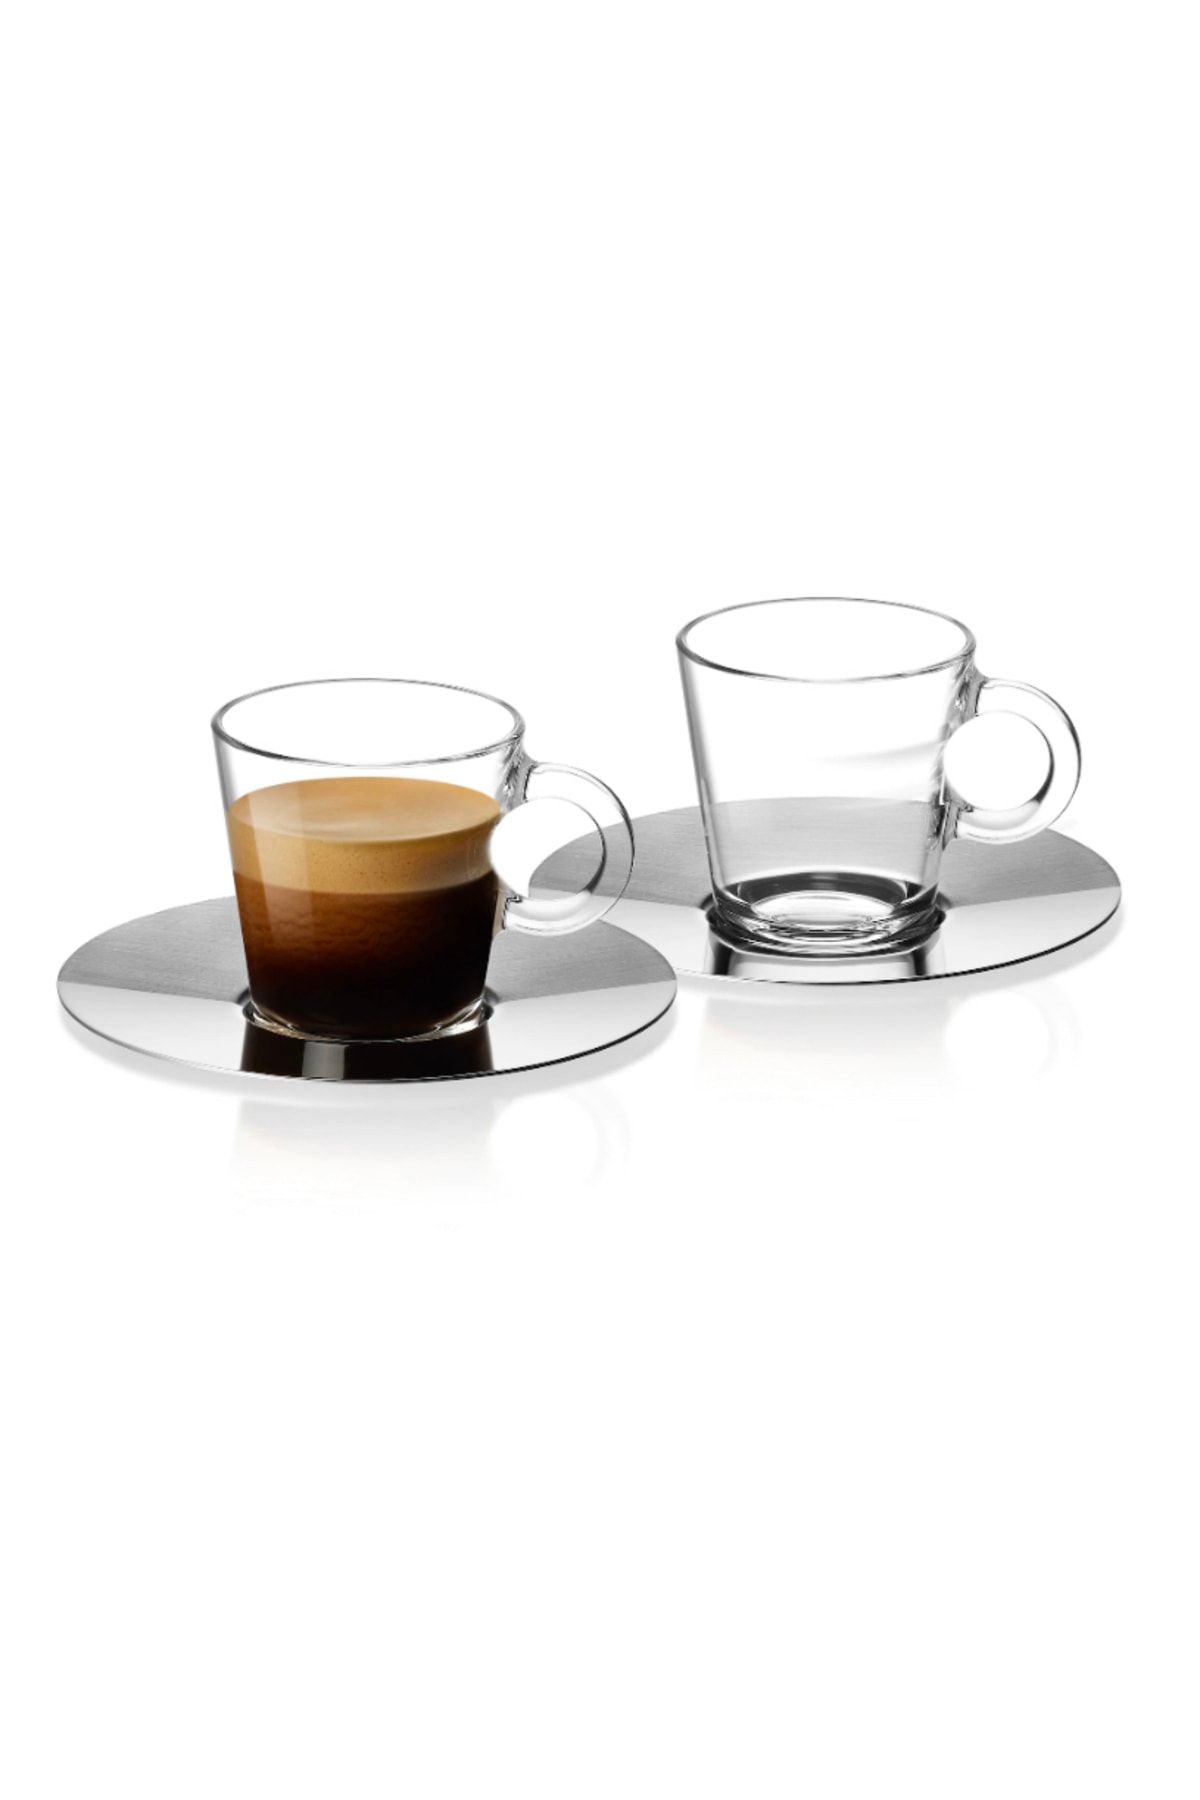 Набор чашек view lungo. Кофейная чашка Nespresso lungo. Кофейная пара неспрессо. Чашки Nespresso упаковка.